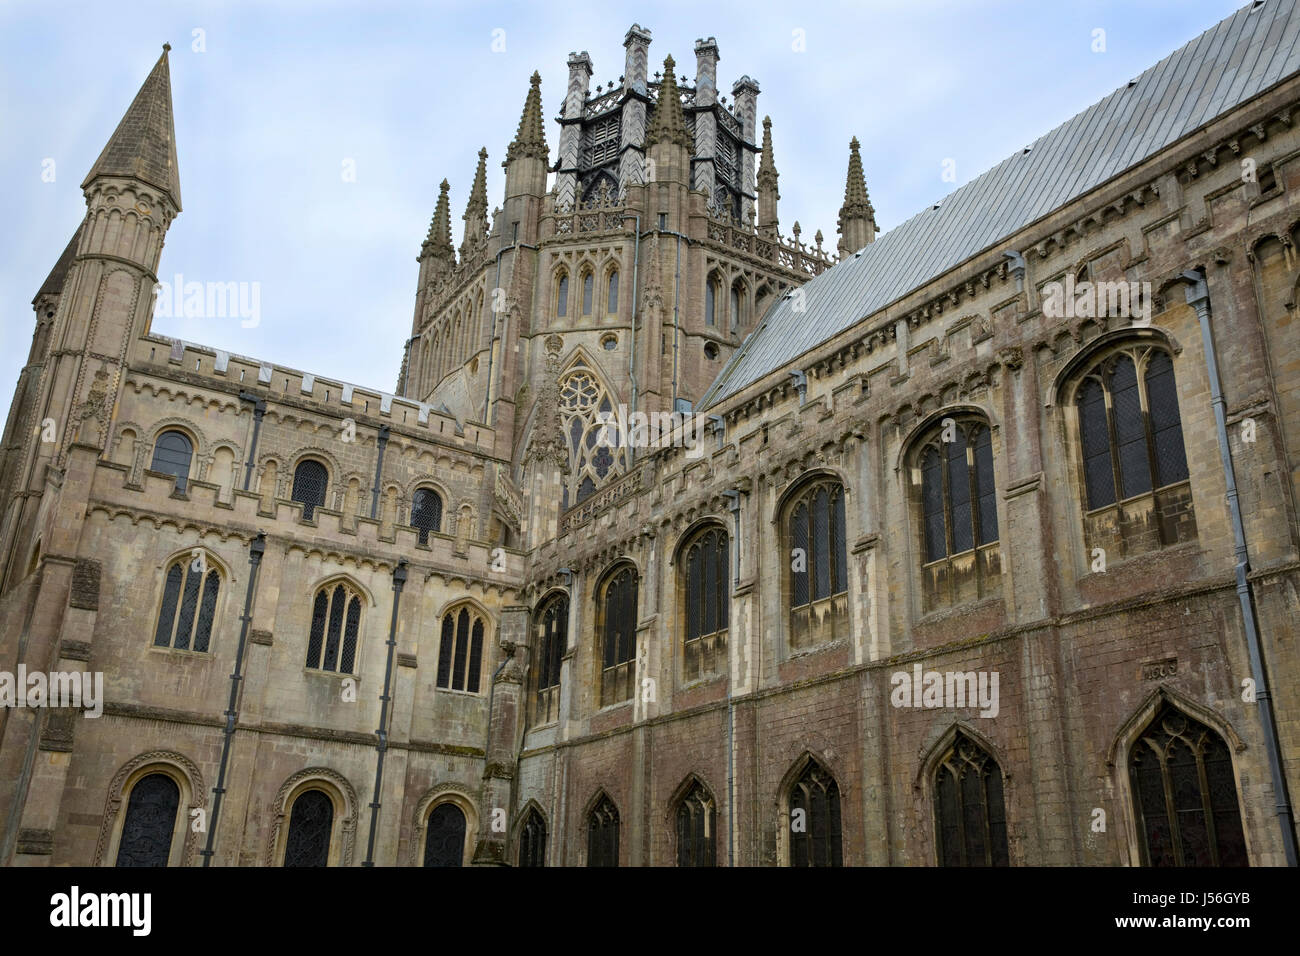 Ely Cathedral, Cambridgeshire, UK Stock Photo